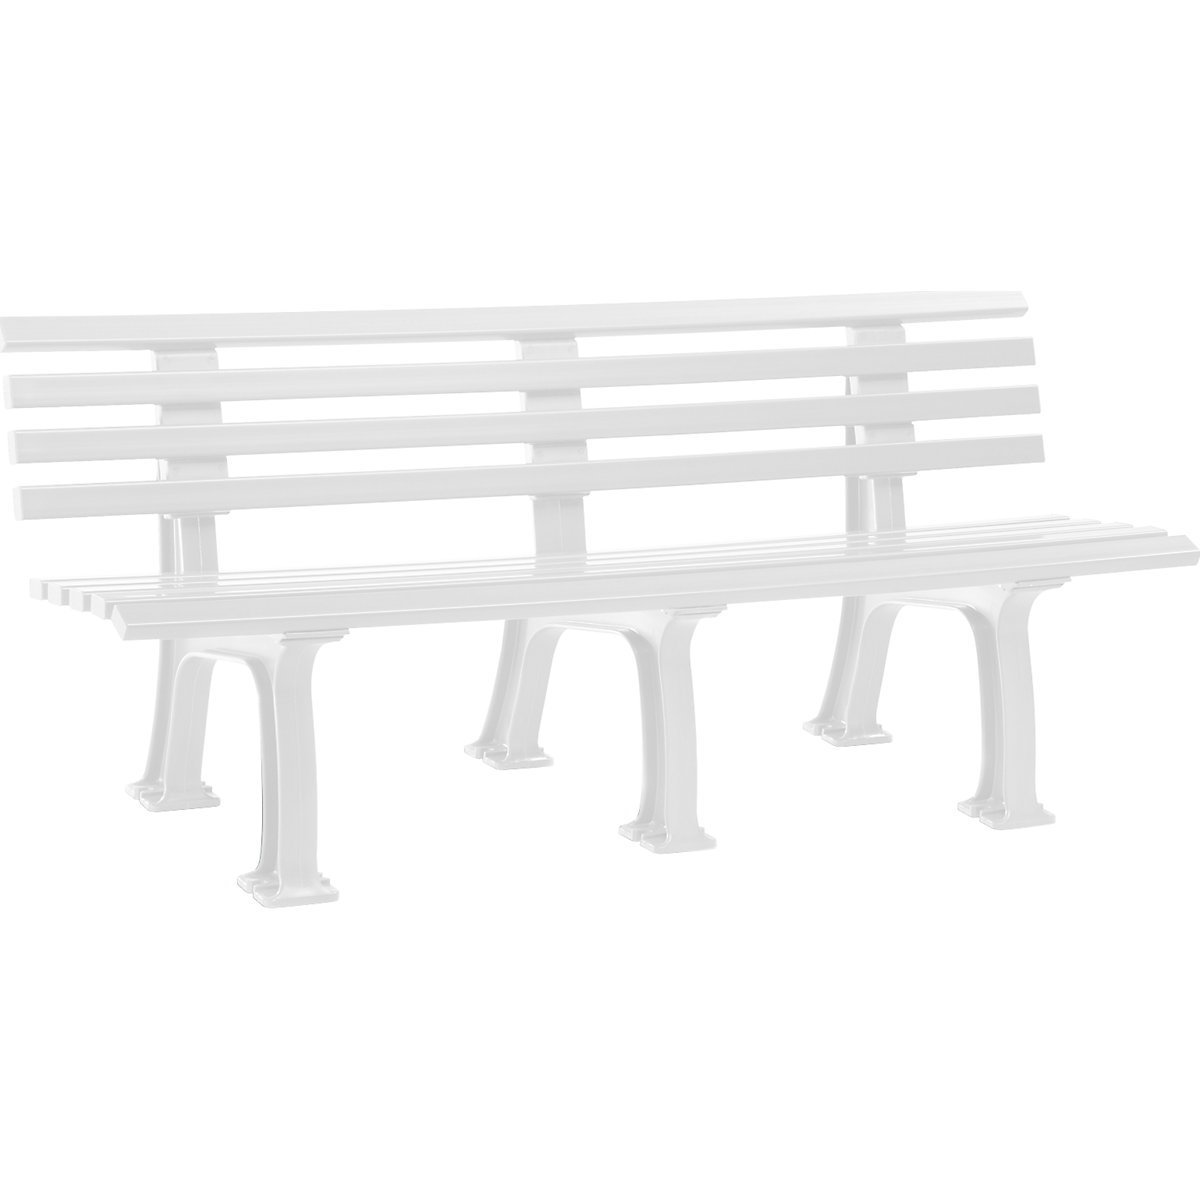 Parková lavička z plastu, s 9 lištami, šířka 2000 mm, bílá-10